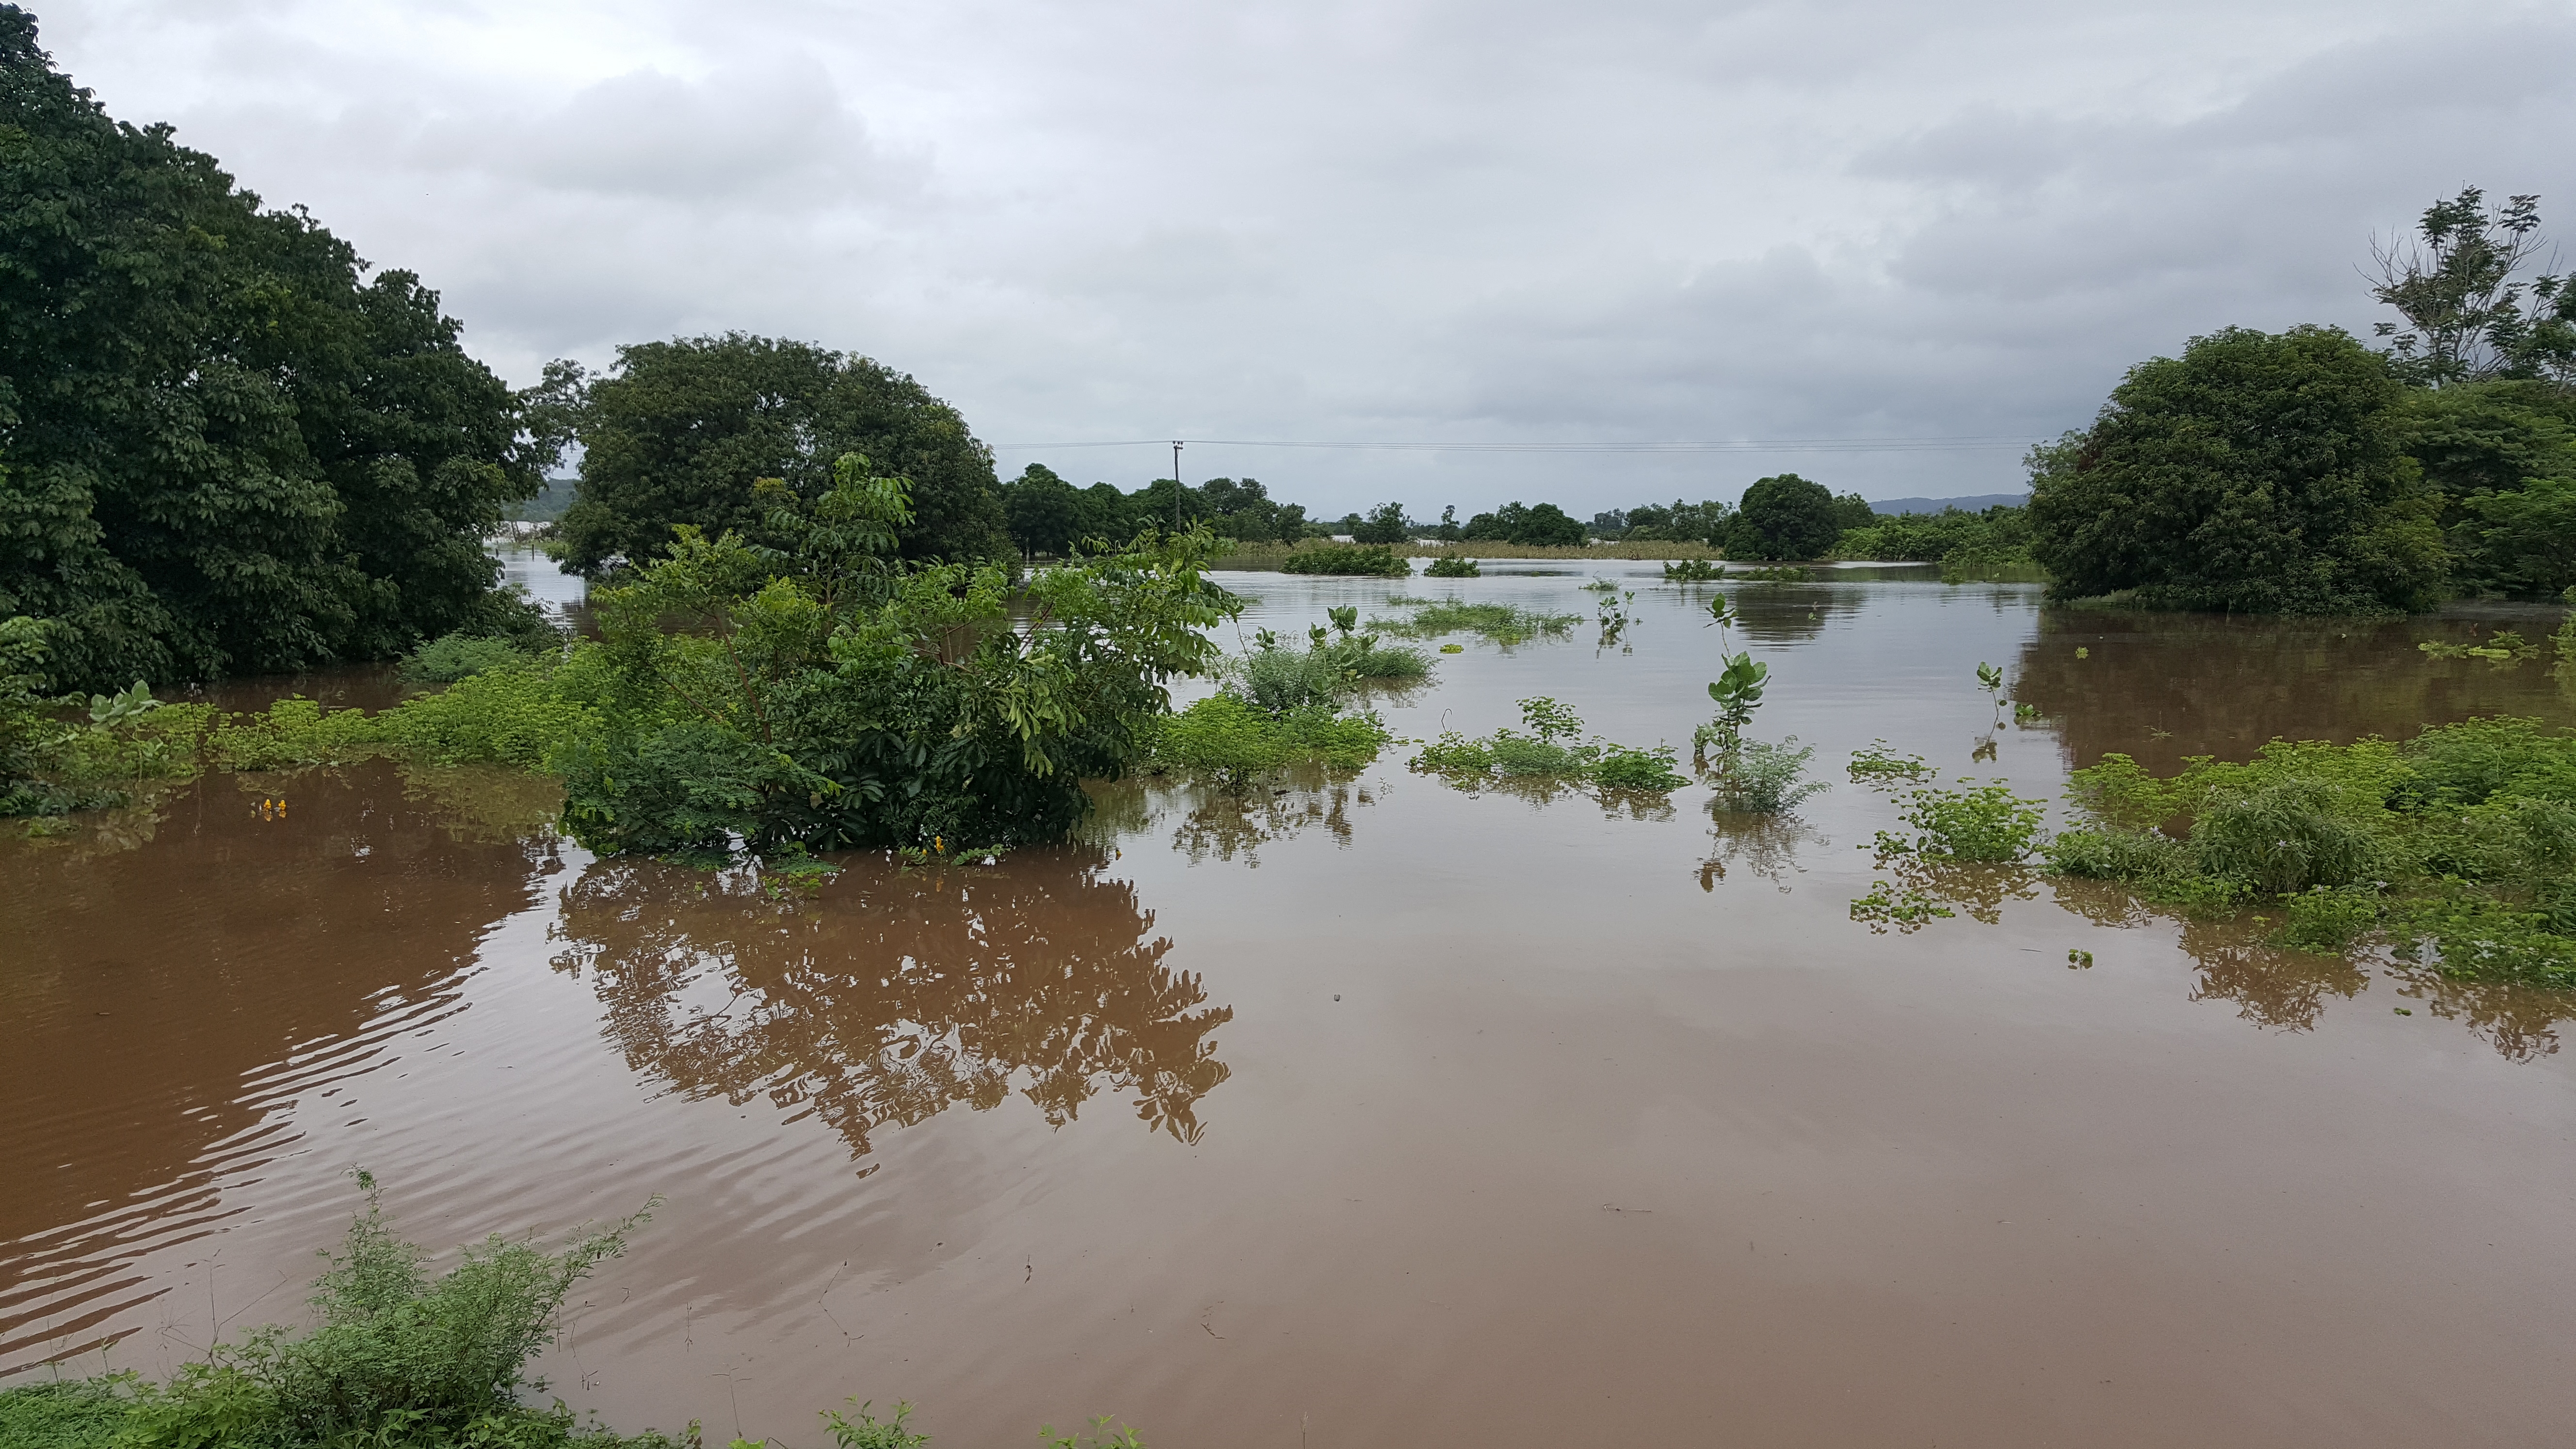 2019年3月9日这张3月8日拍摄的照片显示的是马拉维南部希雷河洪水泛滥